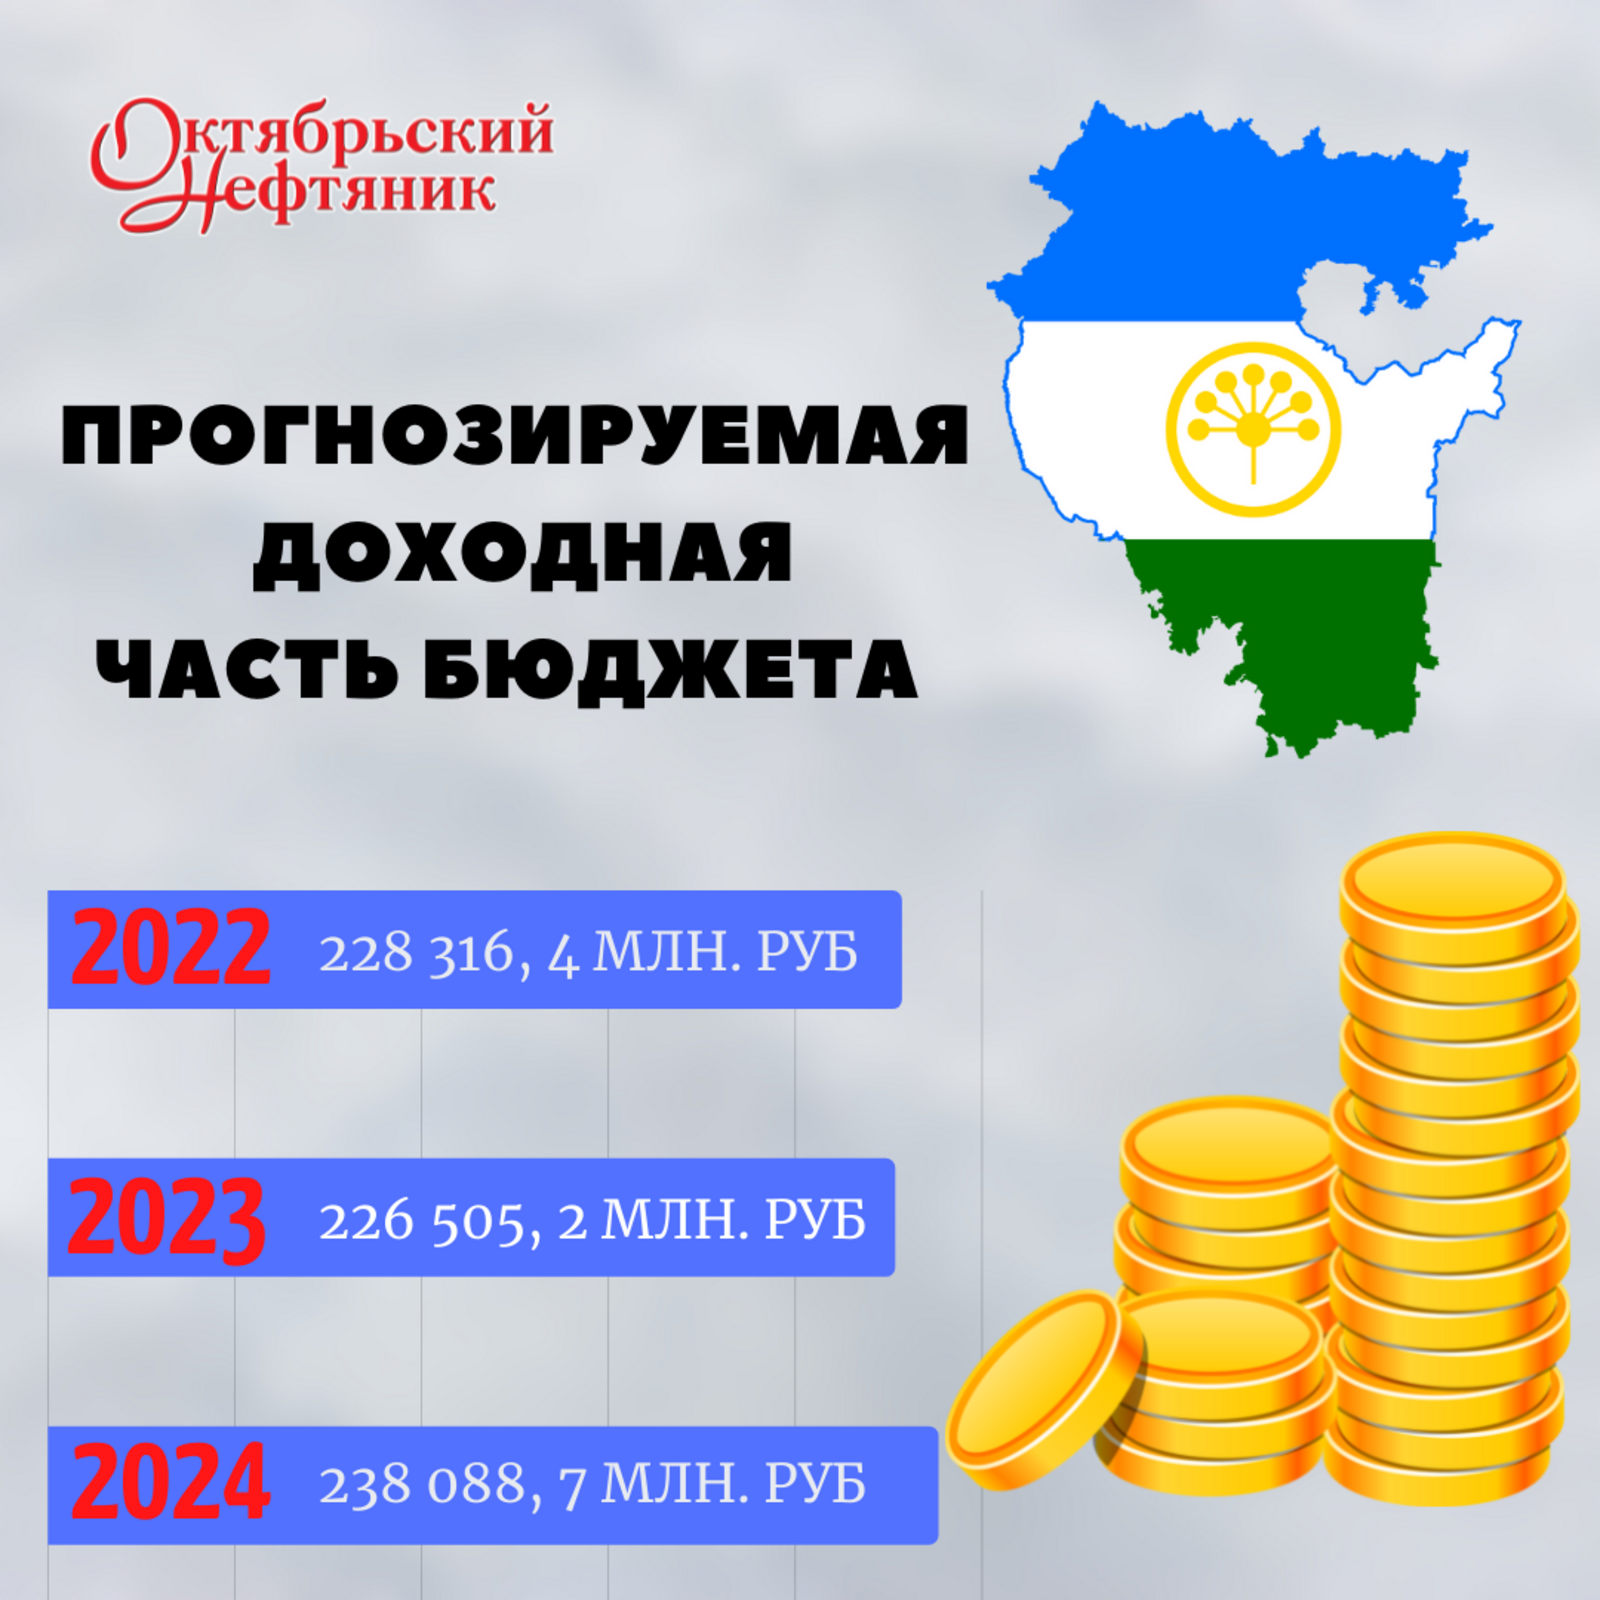 Бюджет Башкортостана на следующий год прогнозируется социально ориентированным